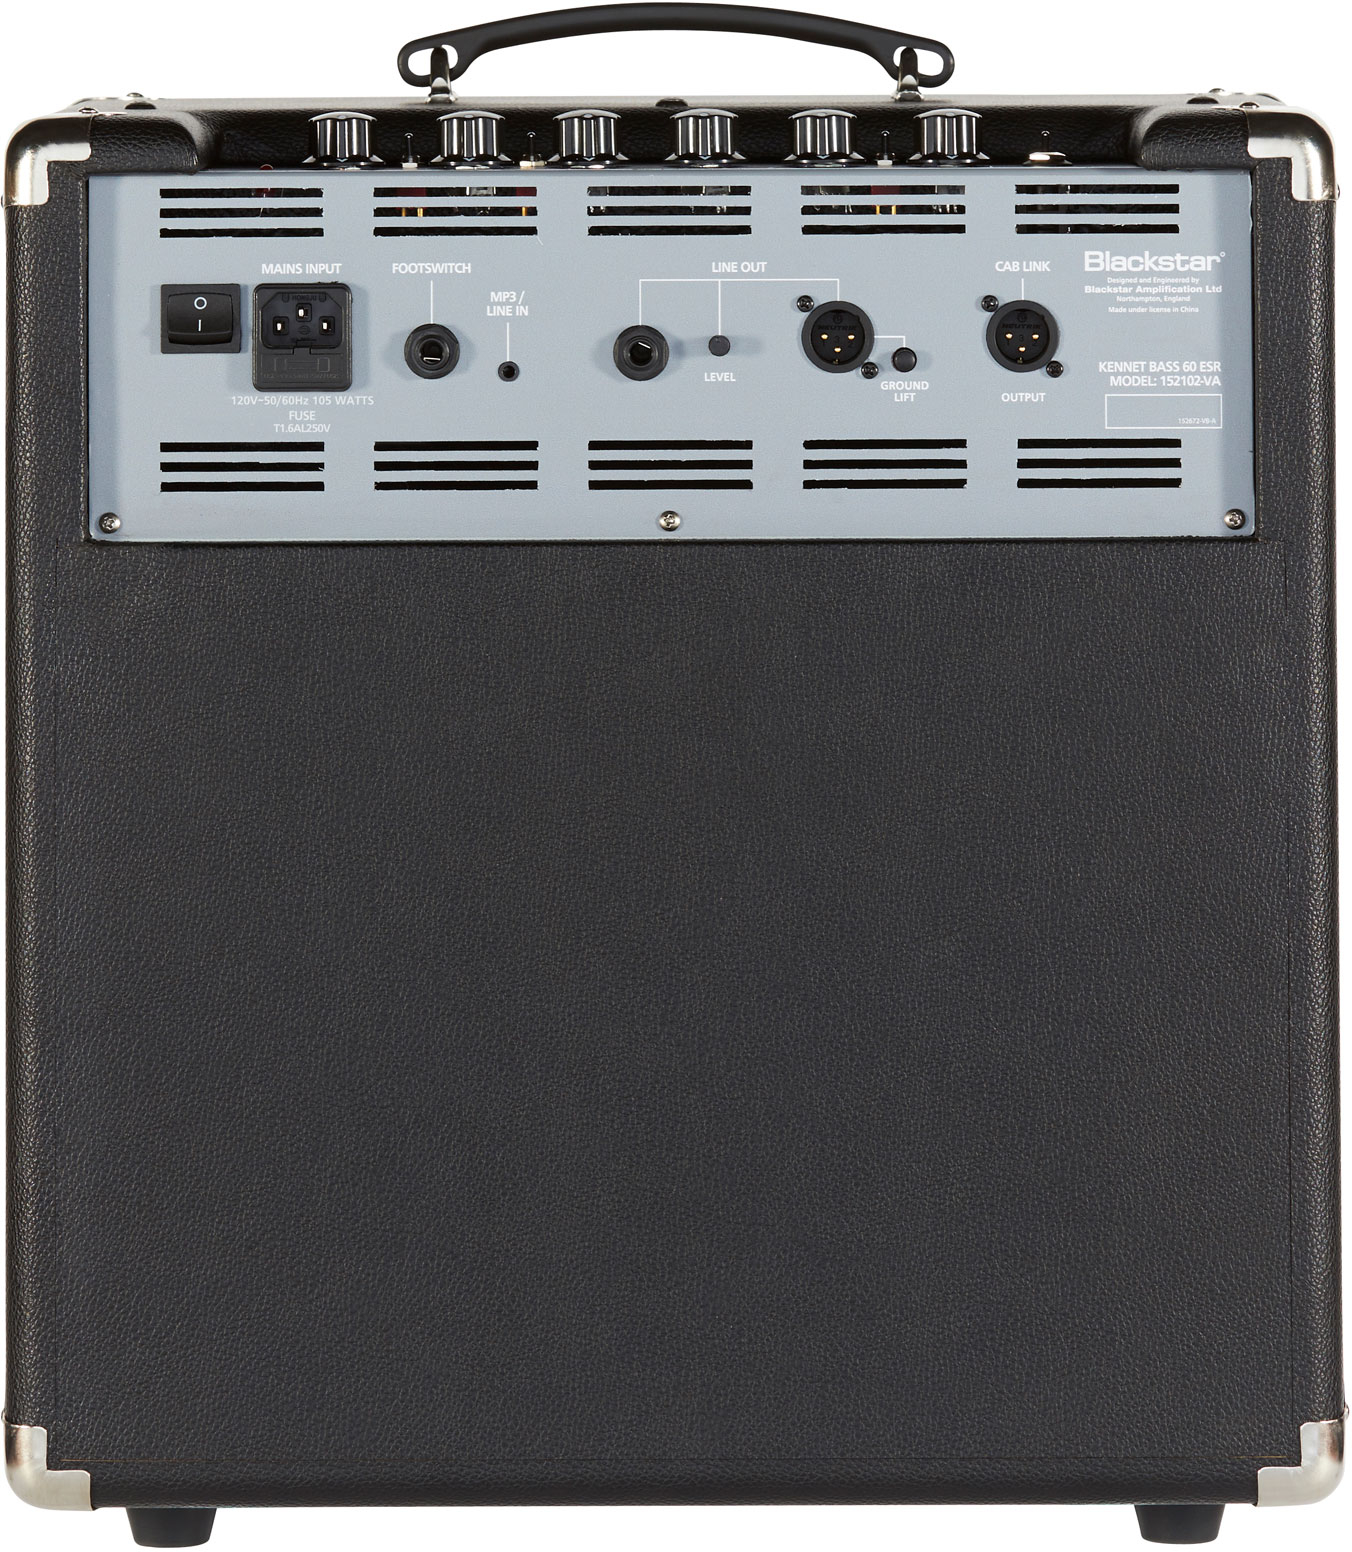 Blackstar Unity 60 - Combo amplificador para bajo - Variation 2